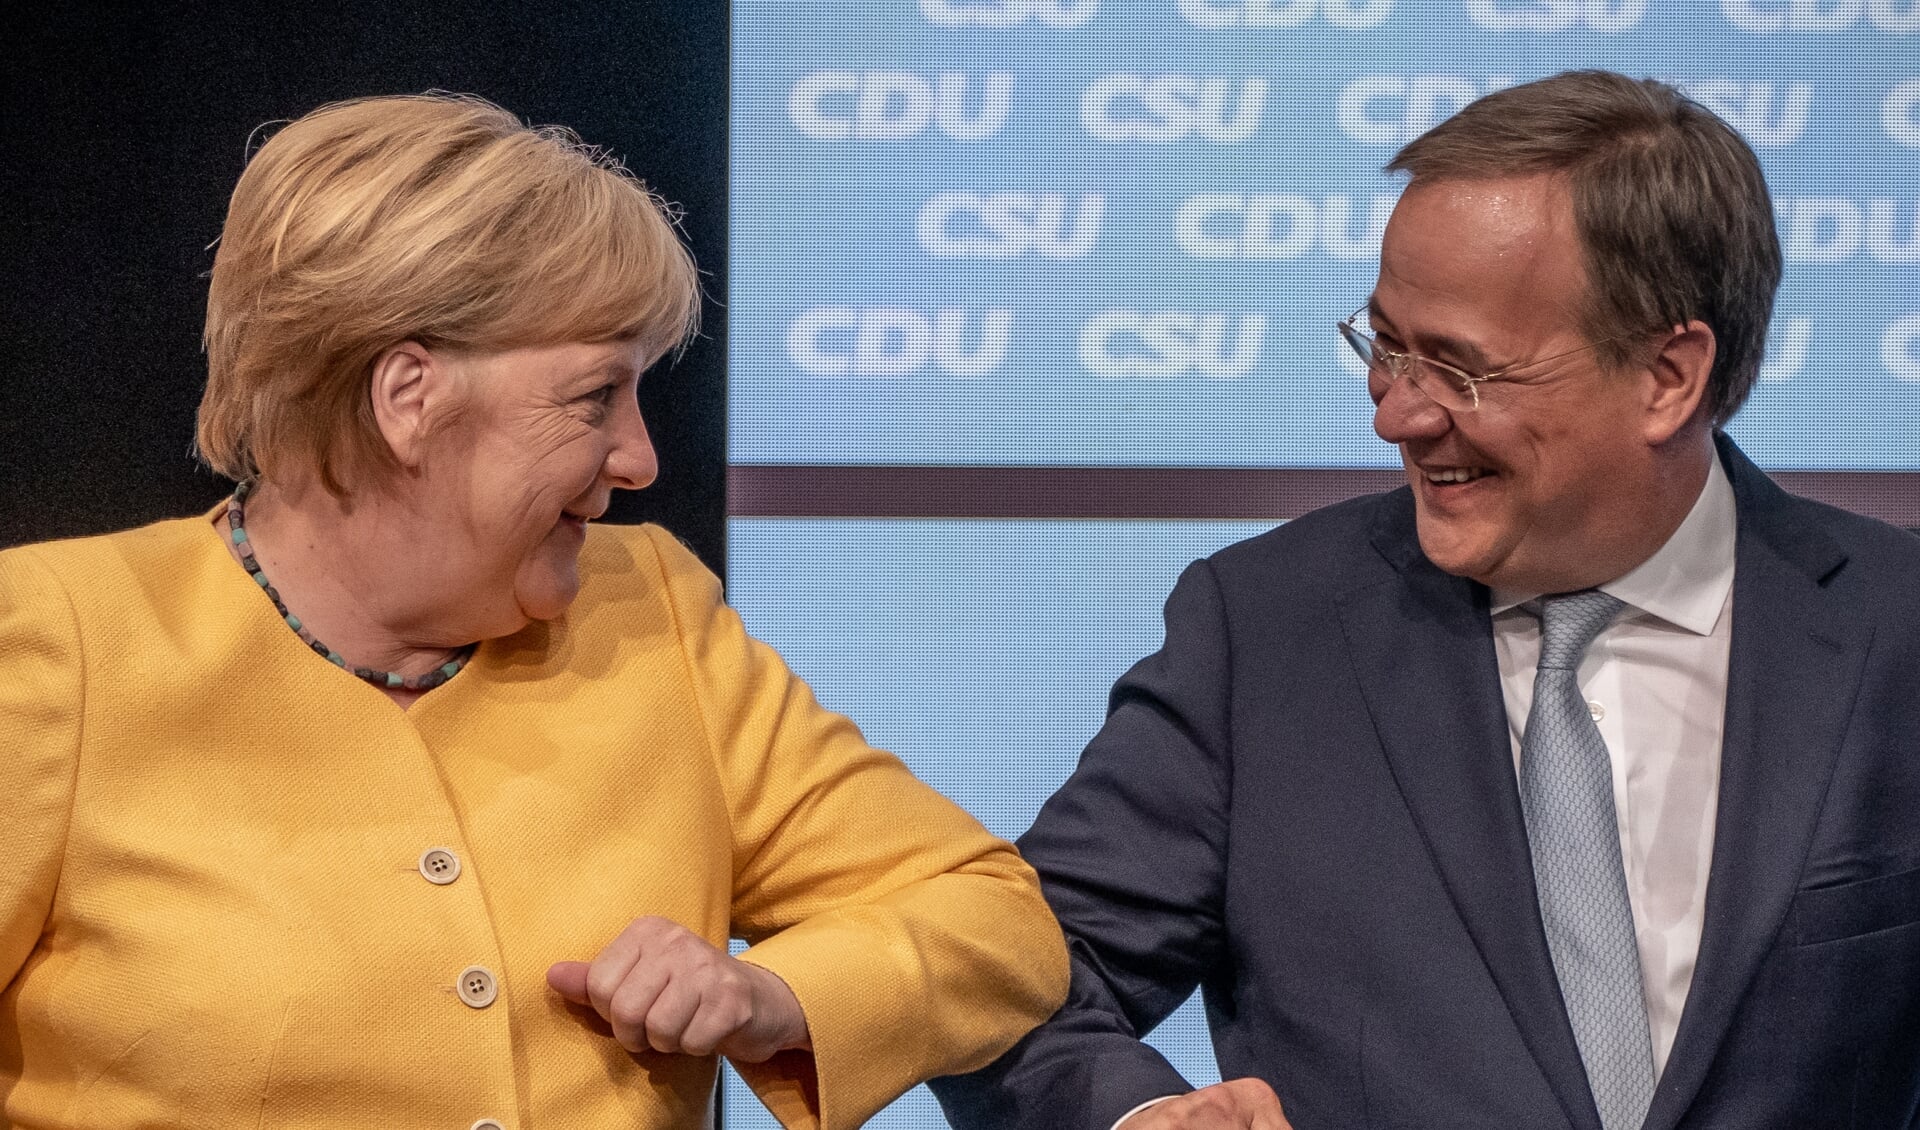 Nuværende forbundskansler Angela Merkel udtrykte sin fulde opbakning til Armin Laschet som sin efterfølger. Foto: